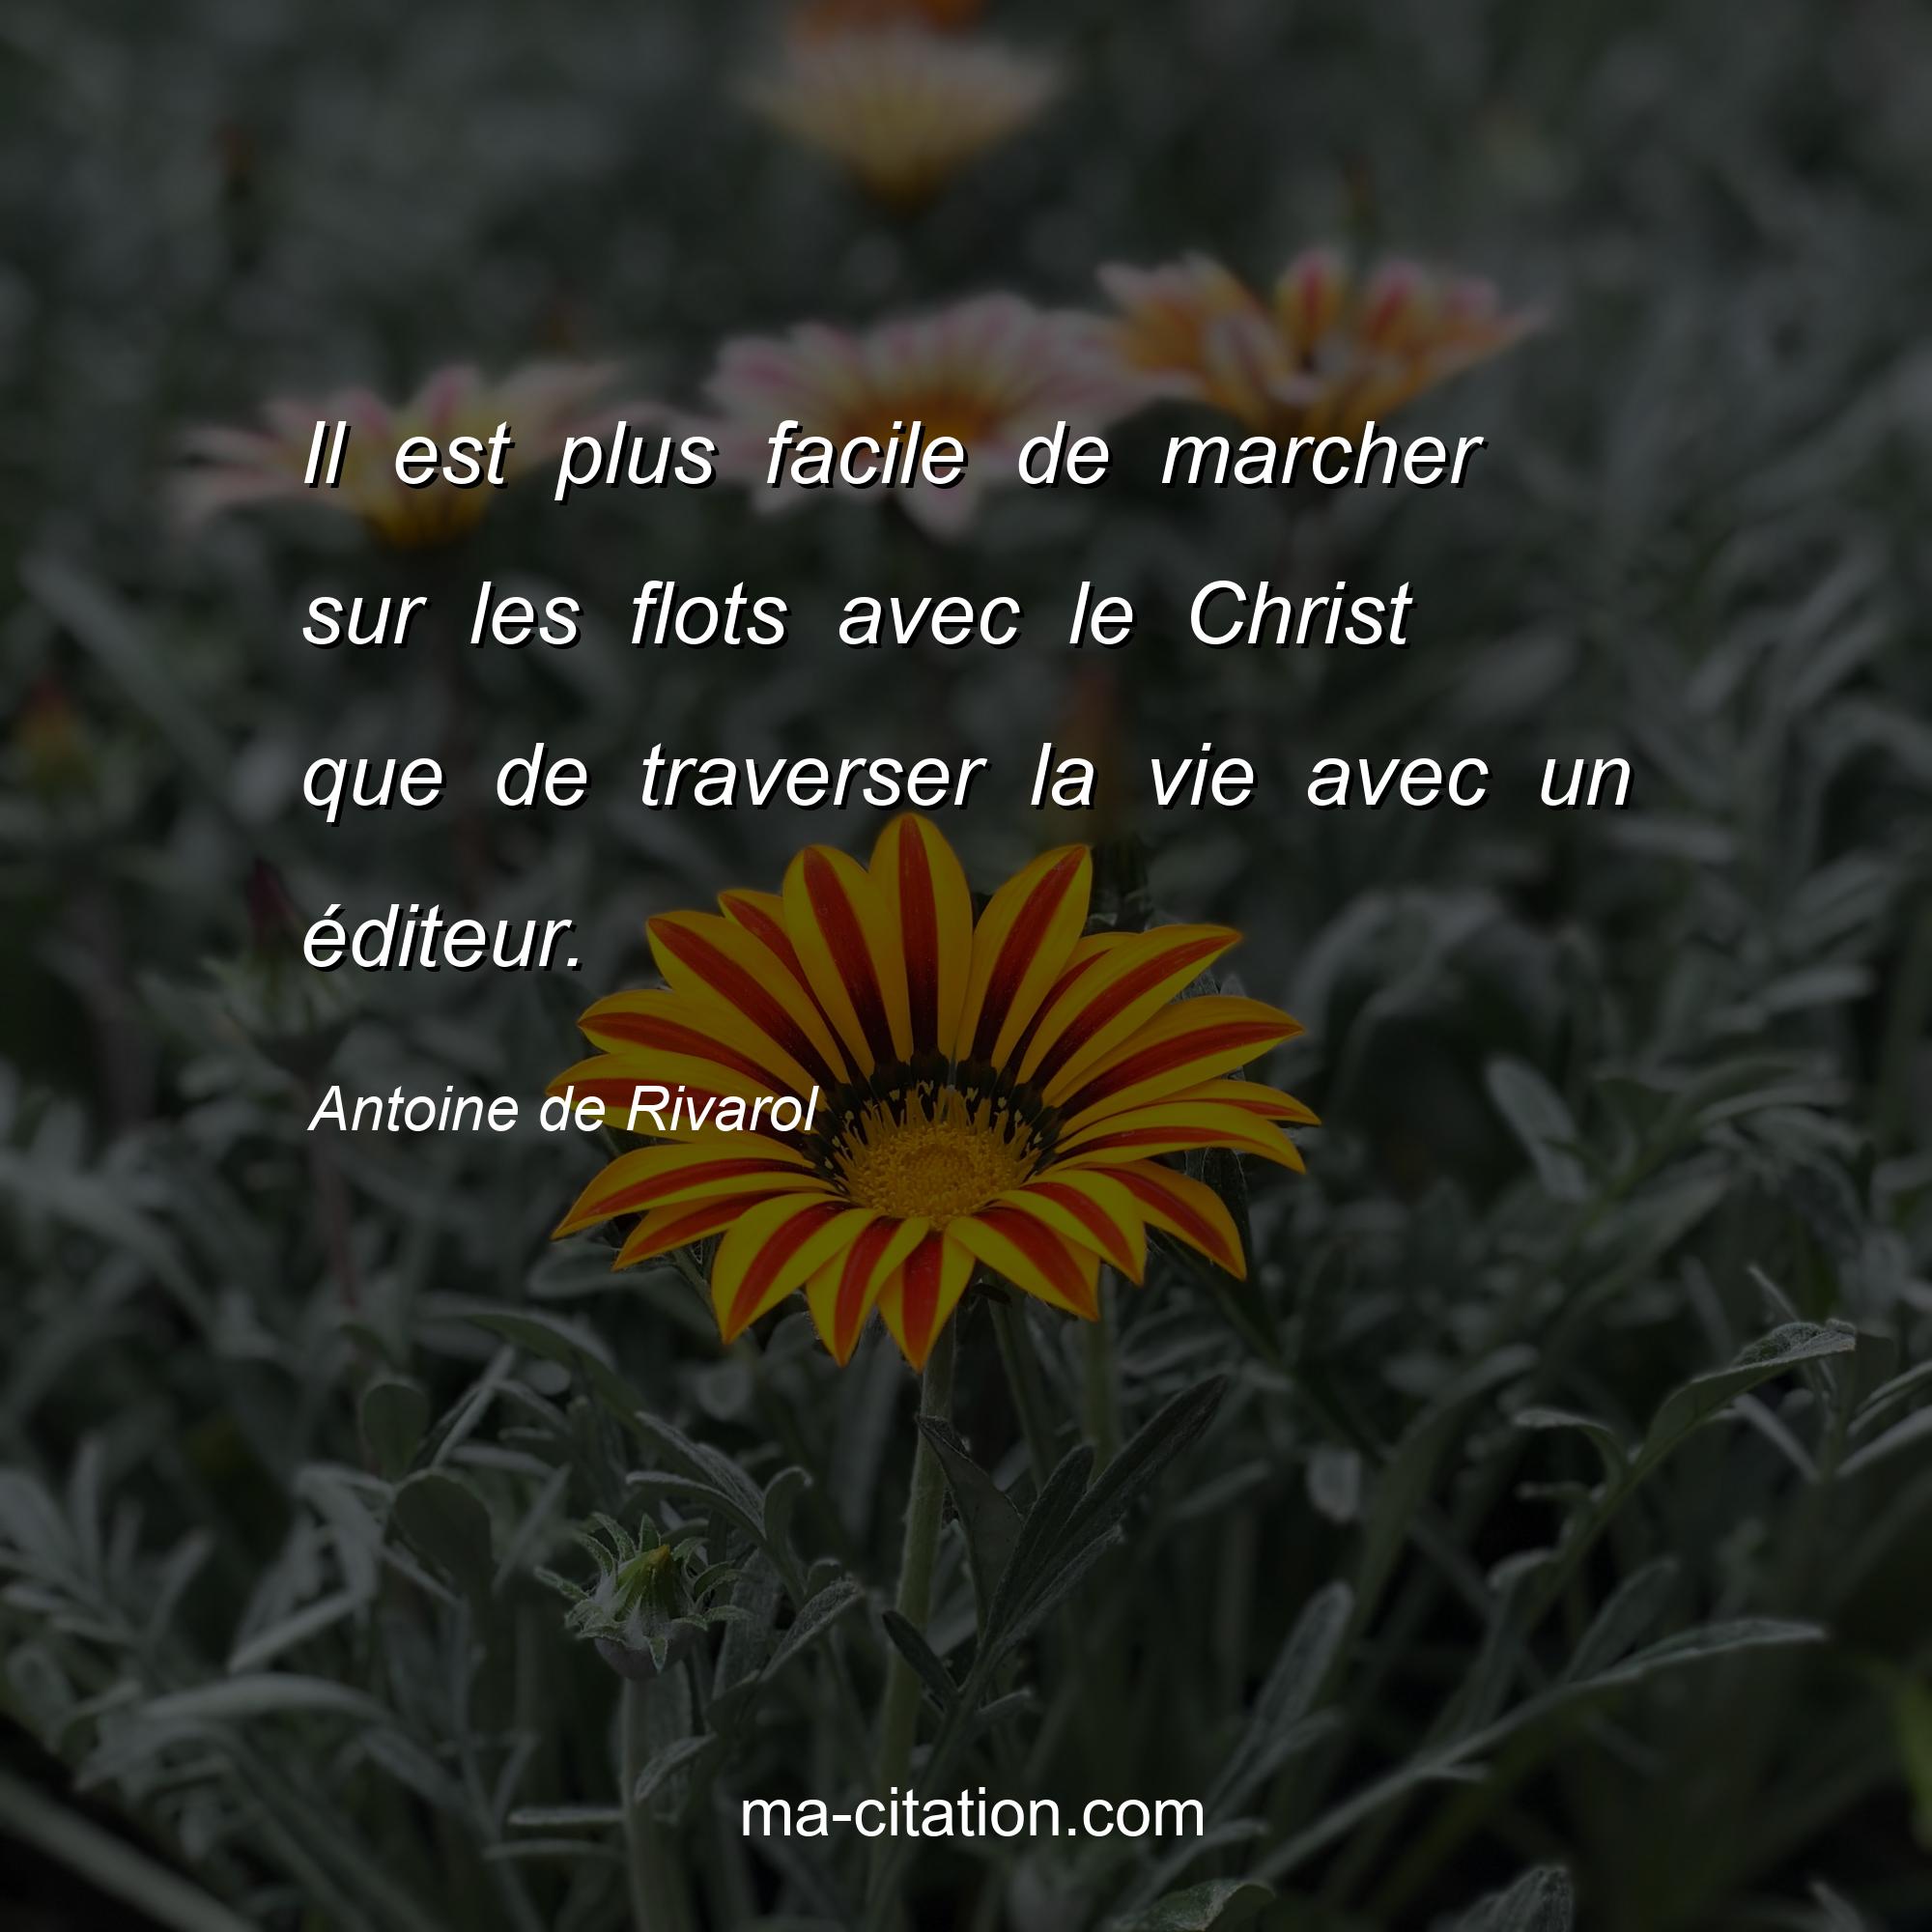 Antoine de Rivarol : Il est plus facile de marcher sur les flots avec le Christ que de traverser la vie avec un éditeur.